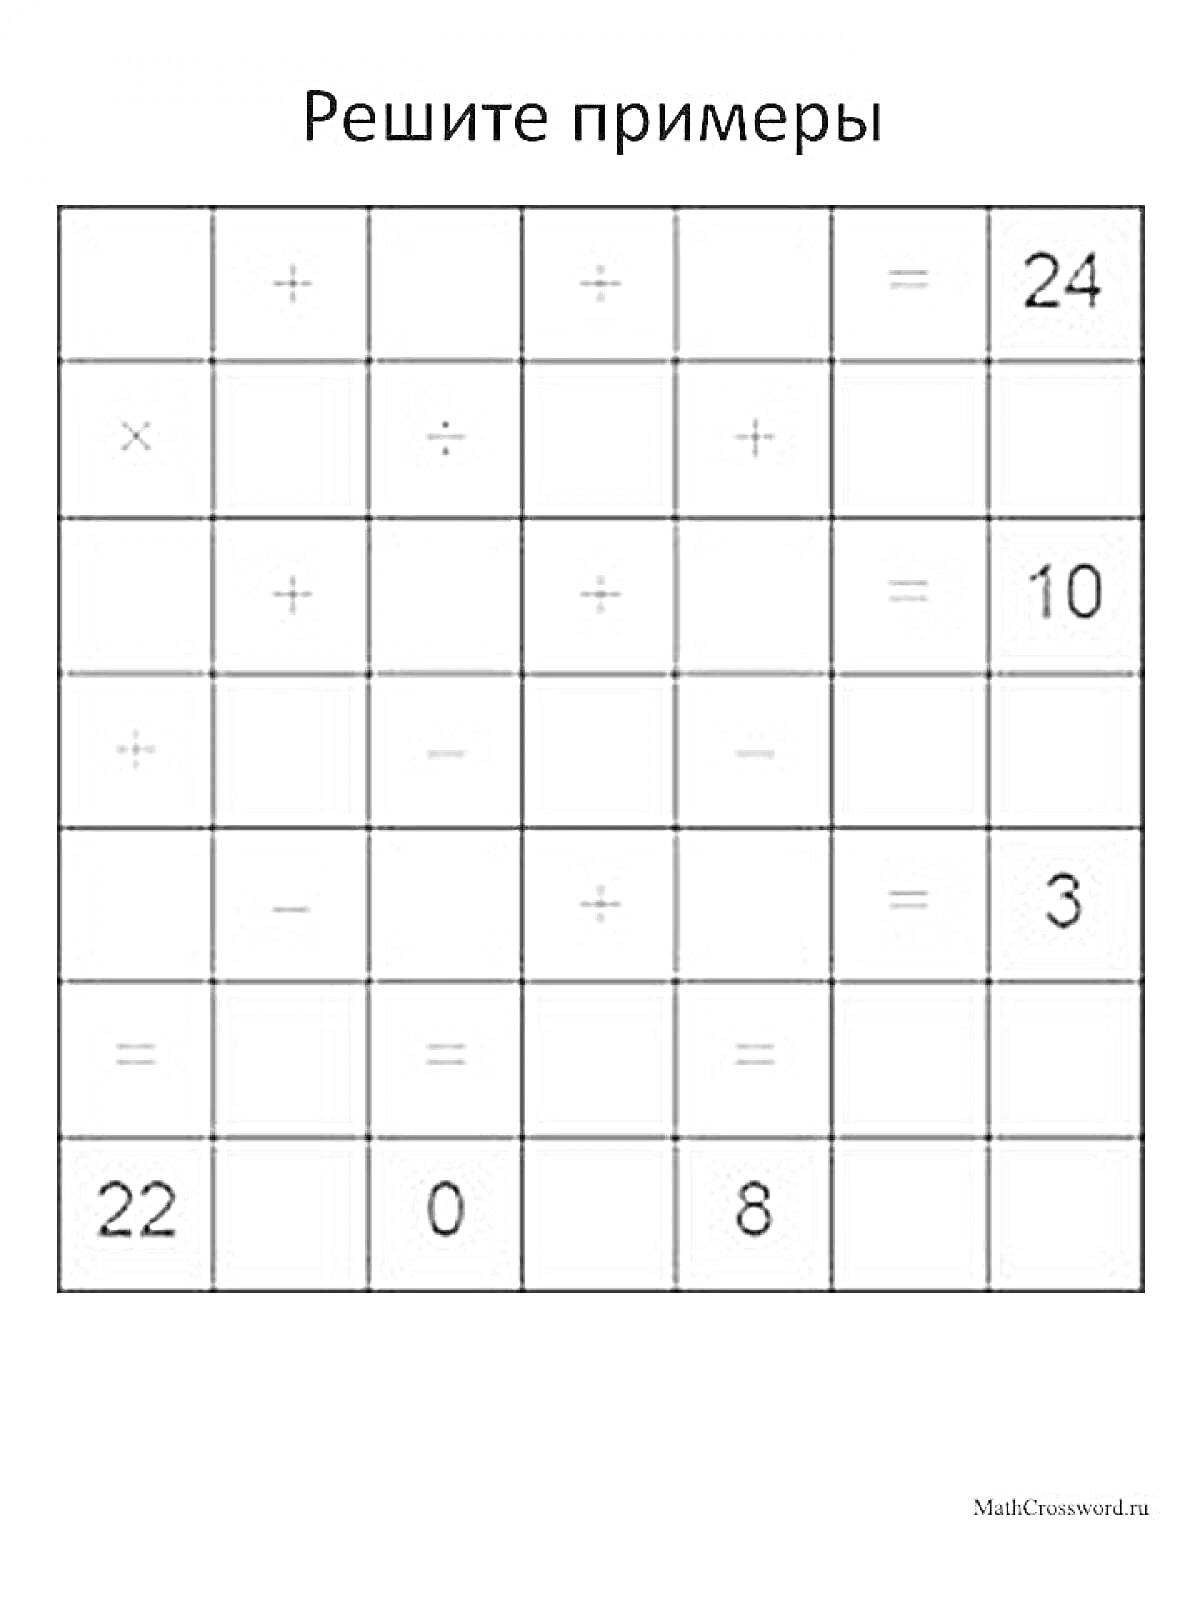 Раскраска Решите примеры - кроссворд с математическими примерами, включает знаки сложения, вычитания, умножения, деления и числа 24, 10, 3, 22, 0 и 8.